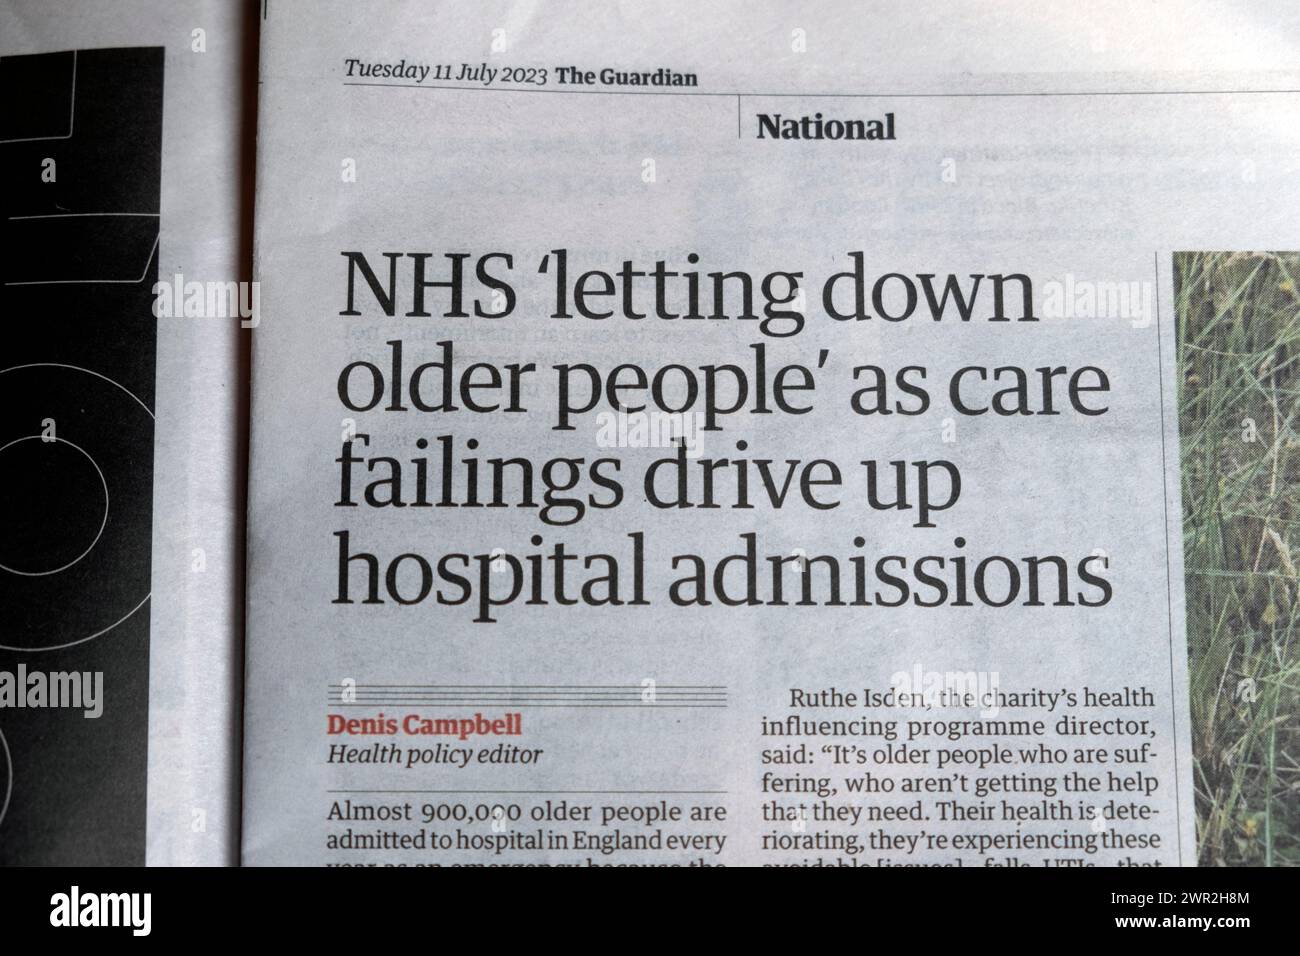 "NHS "deludere le persone anziane" come le carenze di assistenza spingono i ricoveri ospedalieri" il quotidiano Guardian titola assistenza sociale articolo 11 luglio 2023 Londra Regno Unito Foto Stock